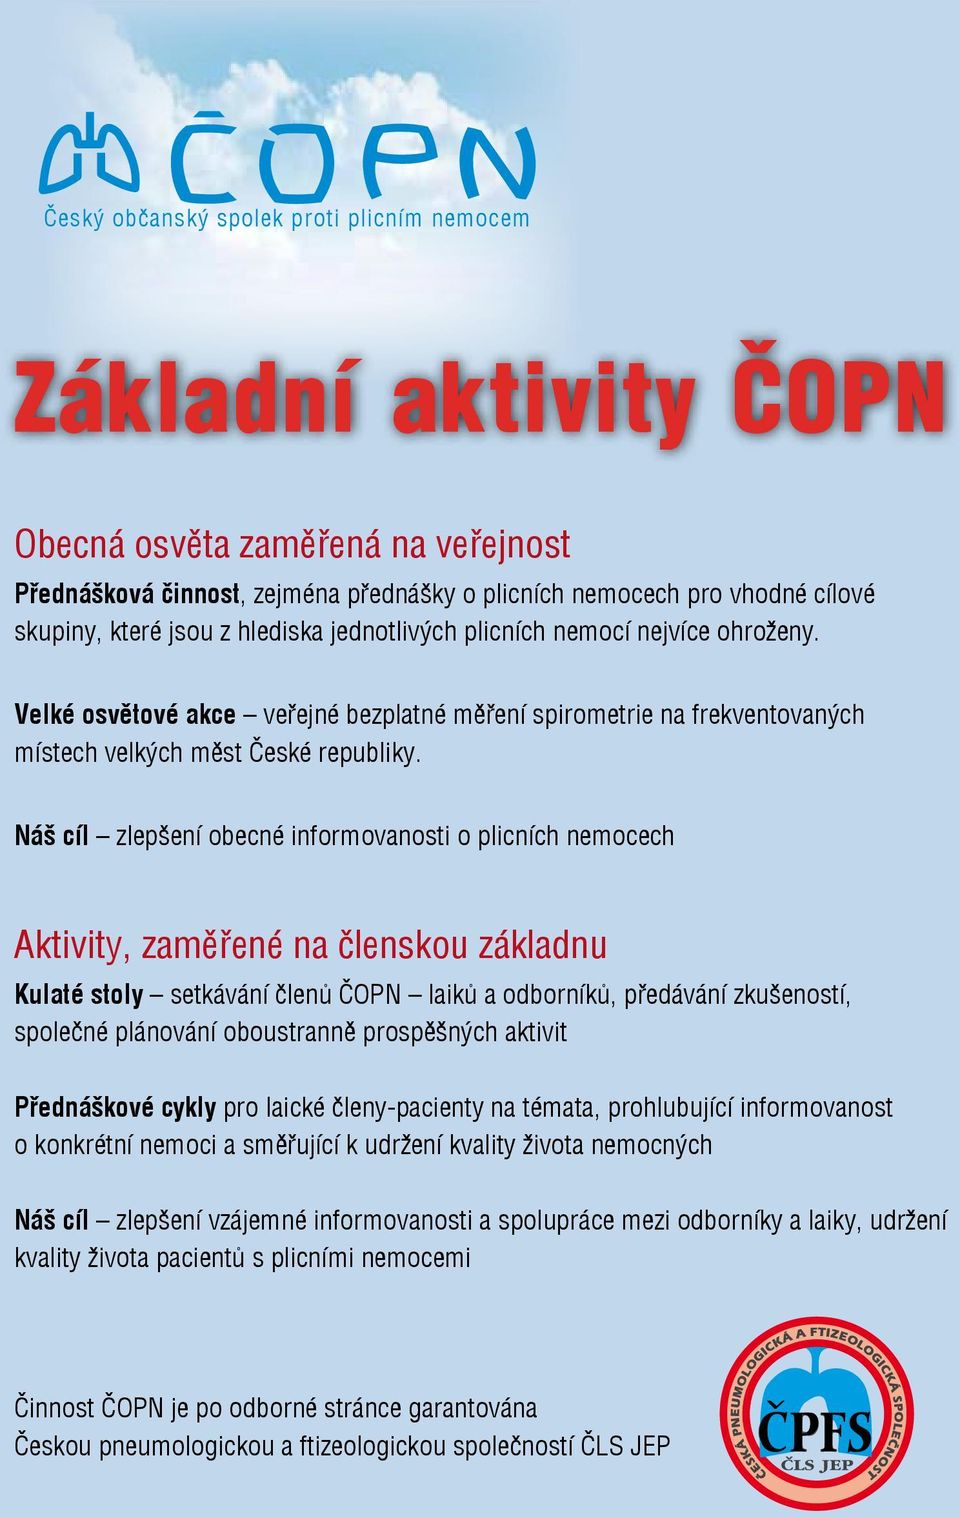 Velké osvětové akce veřejné bezplatné měření spirometrie na frekventovaných místech velkých měst České republiky.